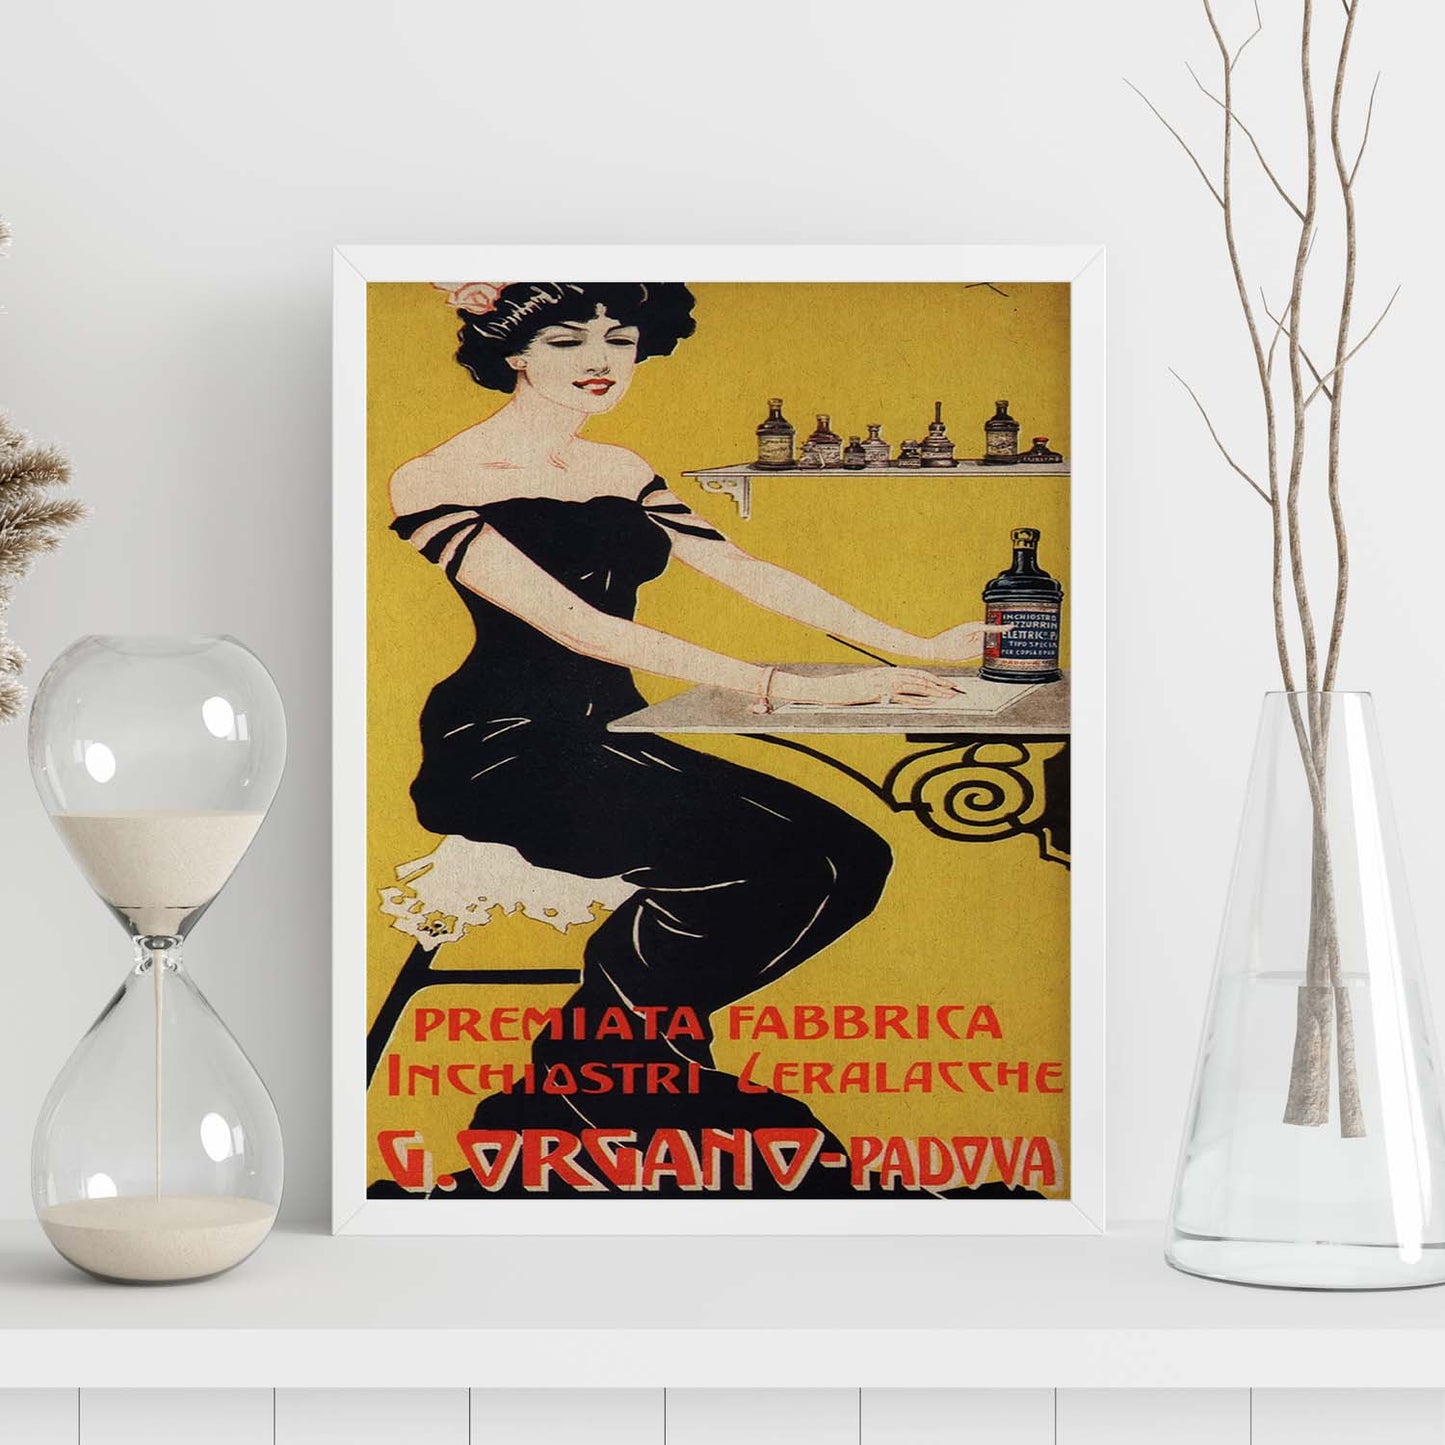 Poster vintage. Anuncio vintage italiano de G. Organo - Padova.-Artwork-Nacnic-Nacnic Estudio SL